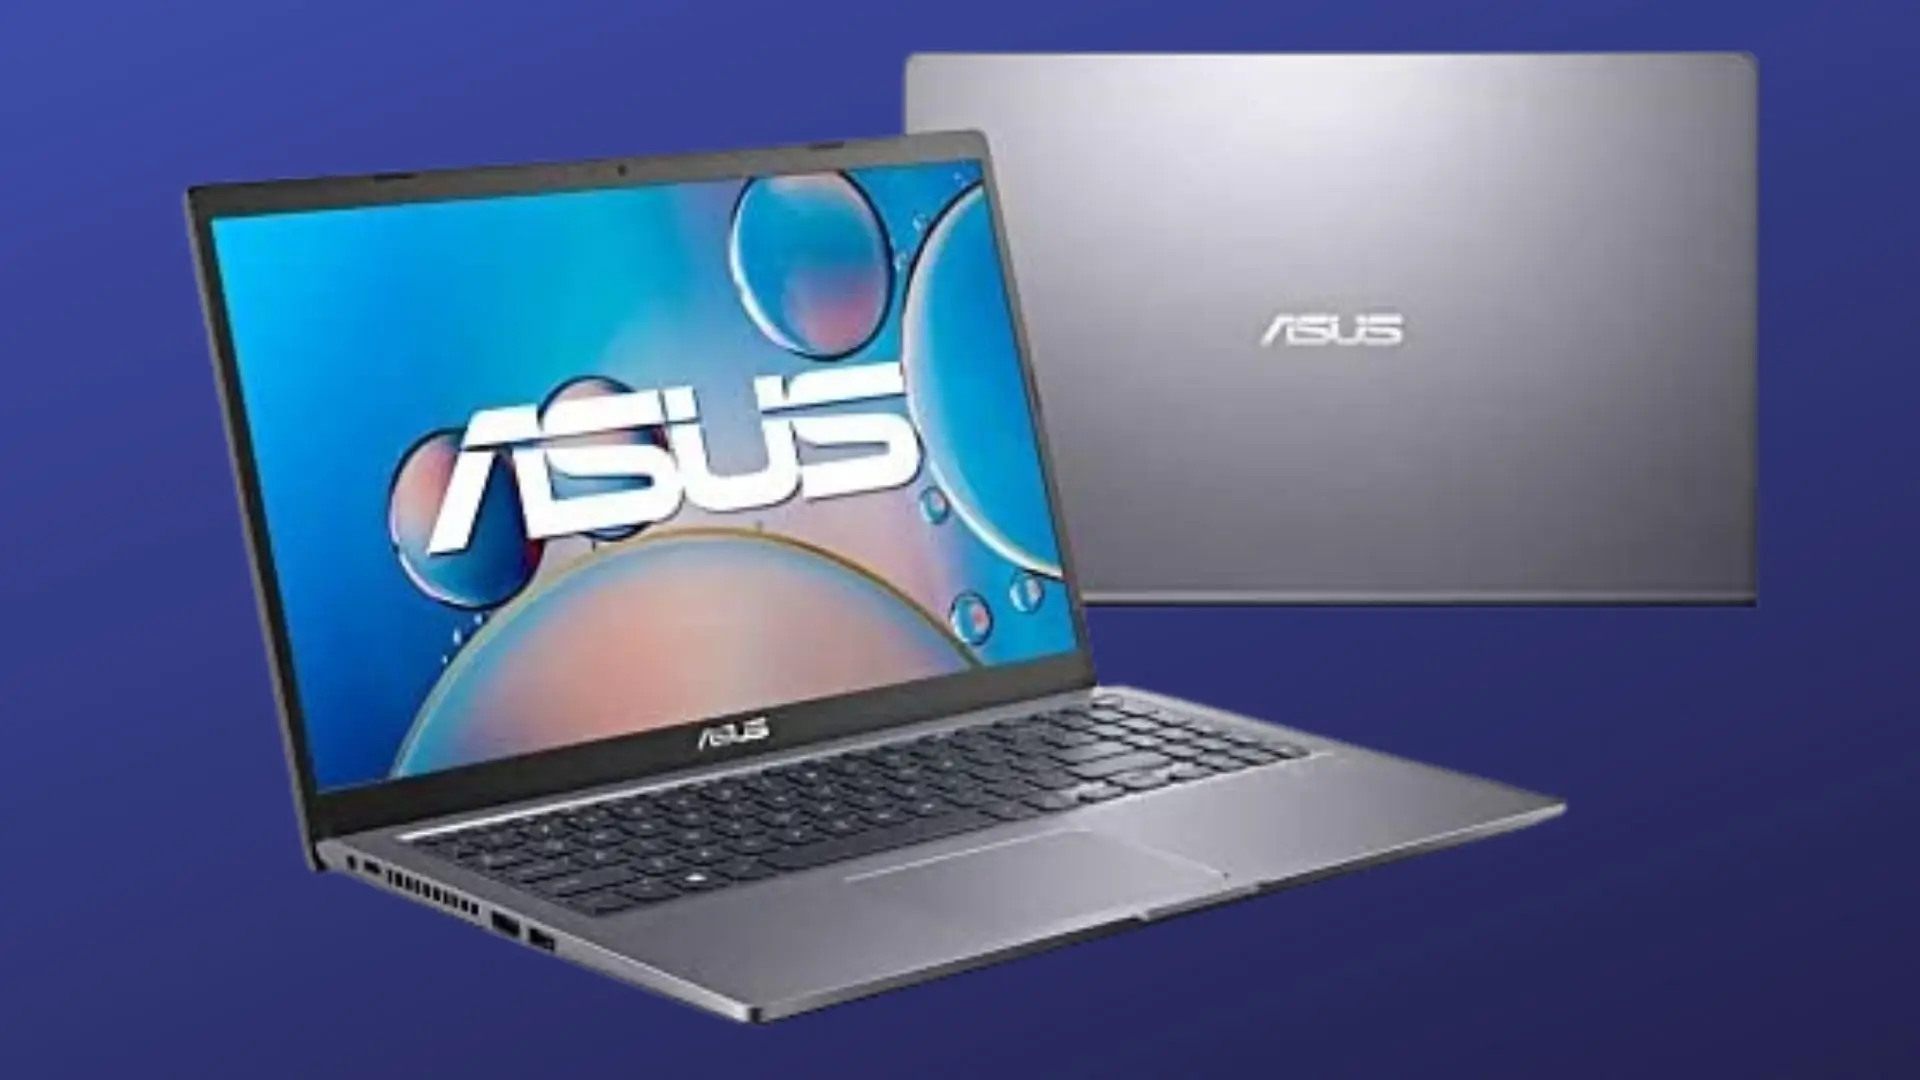 Notebook Asus i5 divulgação preço